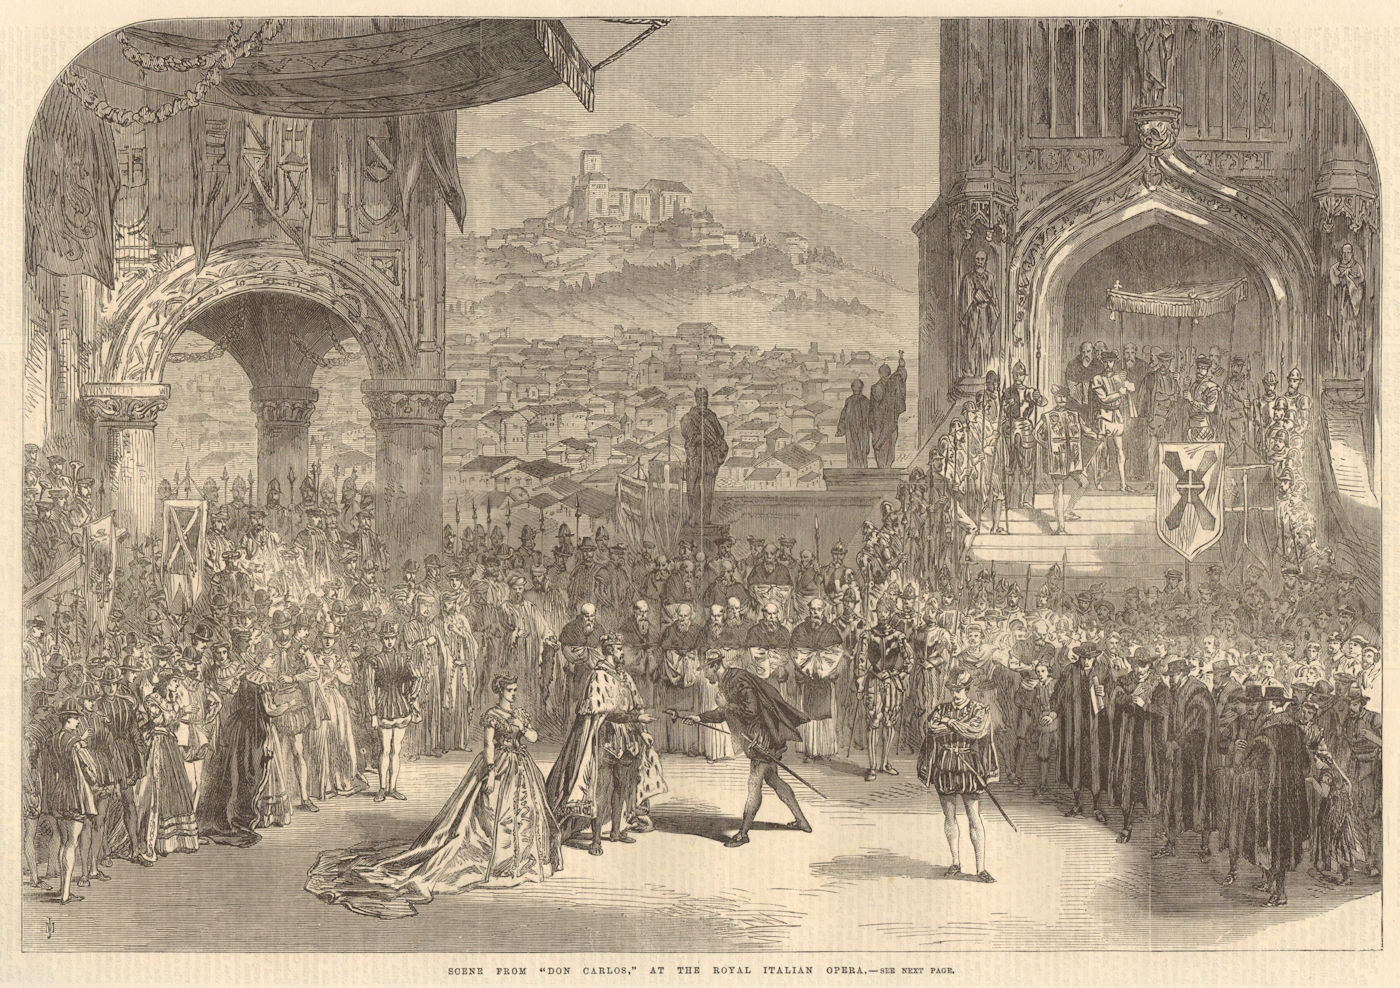 Scene from "Don Carlos" at the Royal Italian Opera. Performing Arts 1867 print